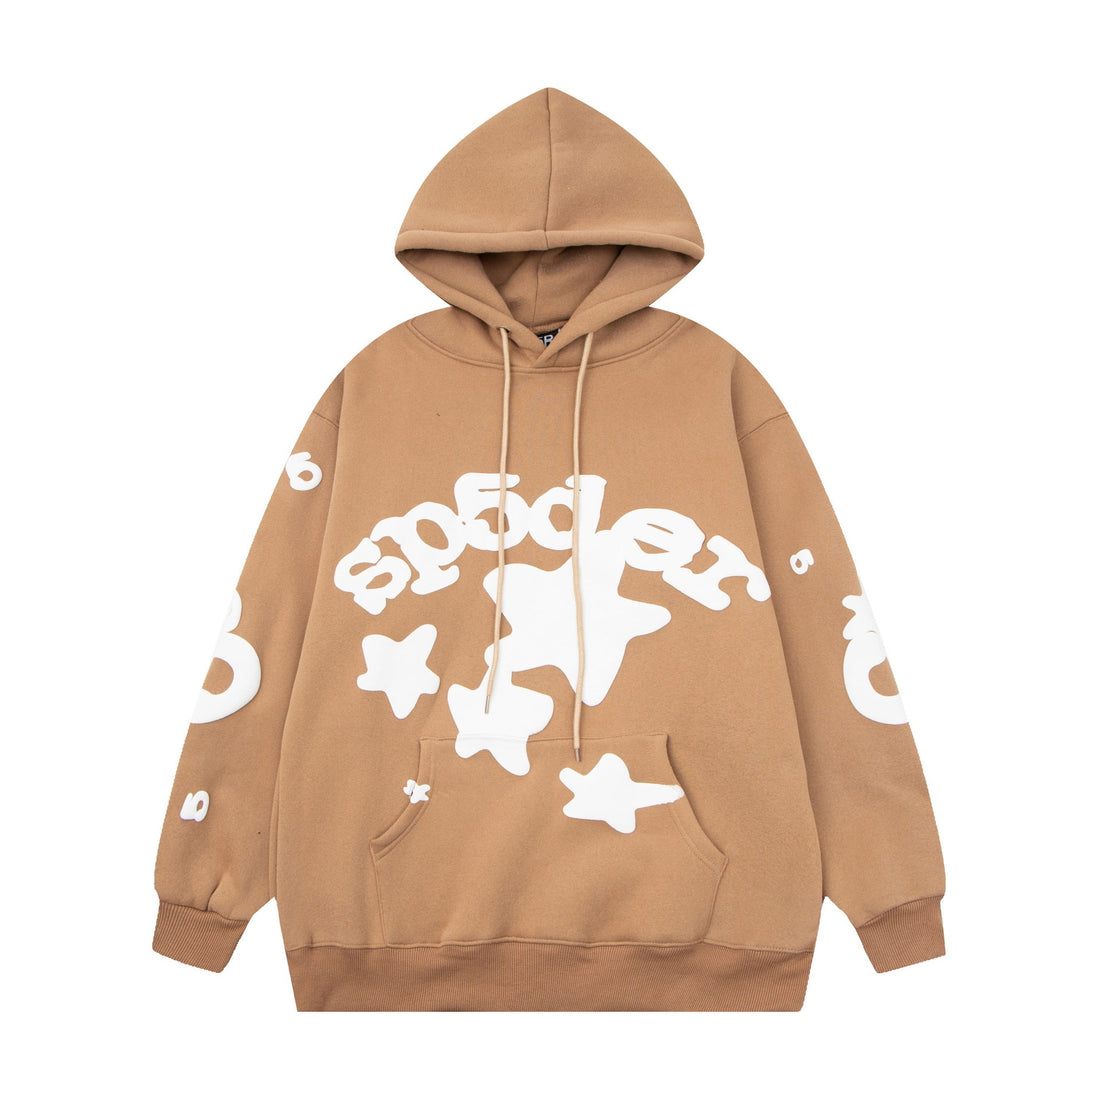 Chic Brown Sp5der Hoodie - Trendy Star Print Hooded Sweatshirt - Seakoff